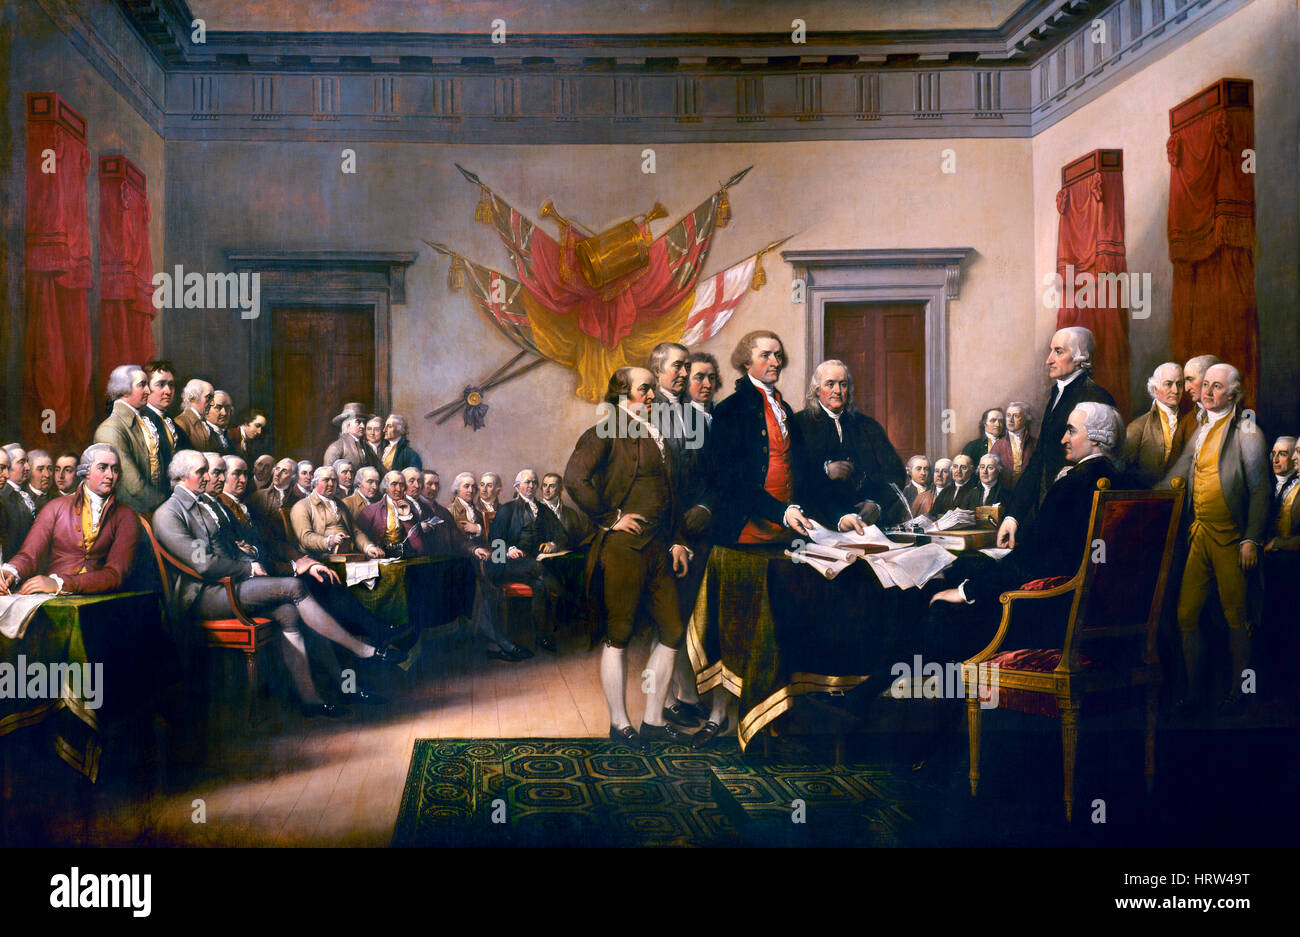 La signature de la Déclaration d'indépendance des États-Unis en 1776. Peinture de John Trumbull dans la rotonde du Capitole, à Washington DC. Banque D'Images